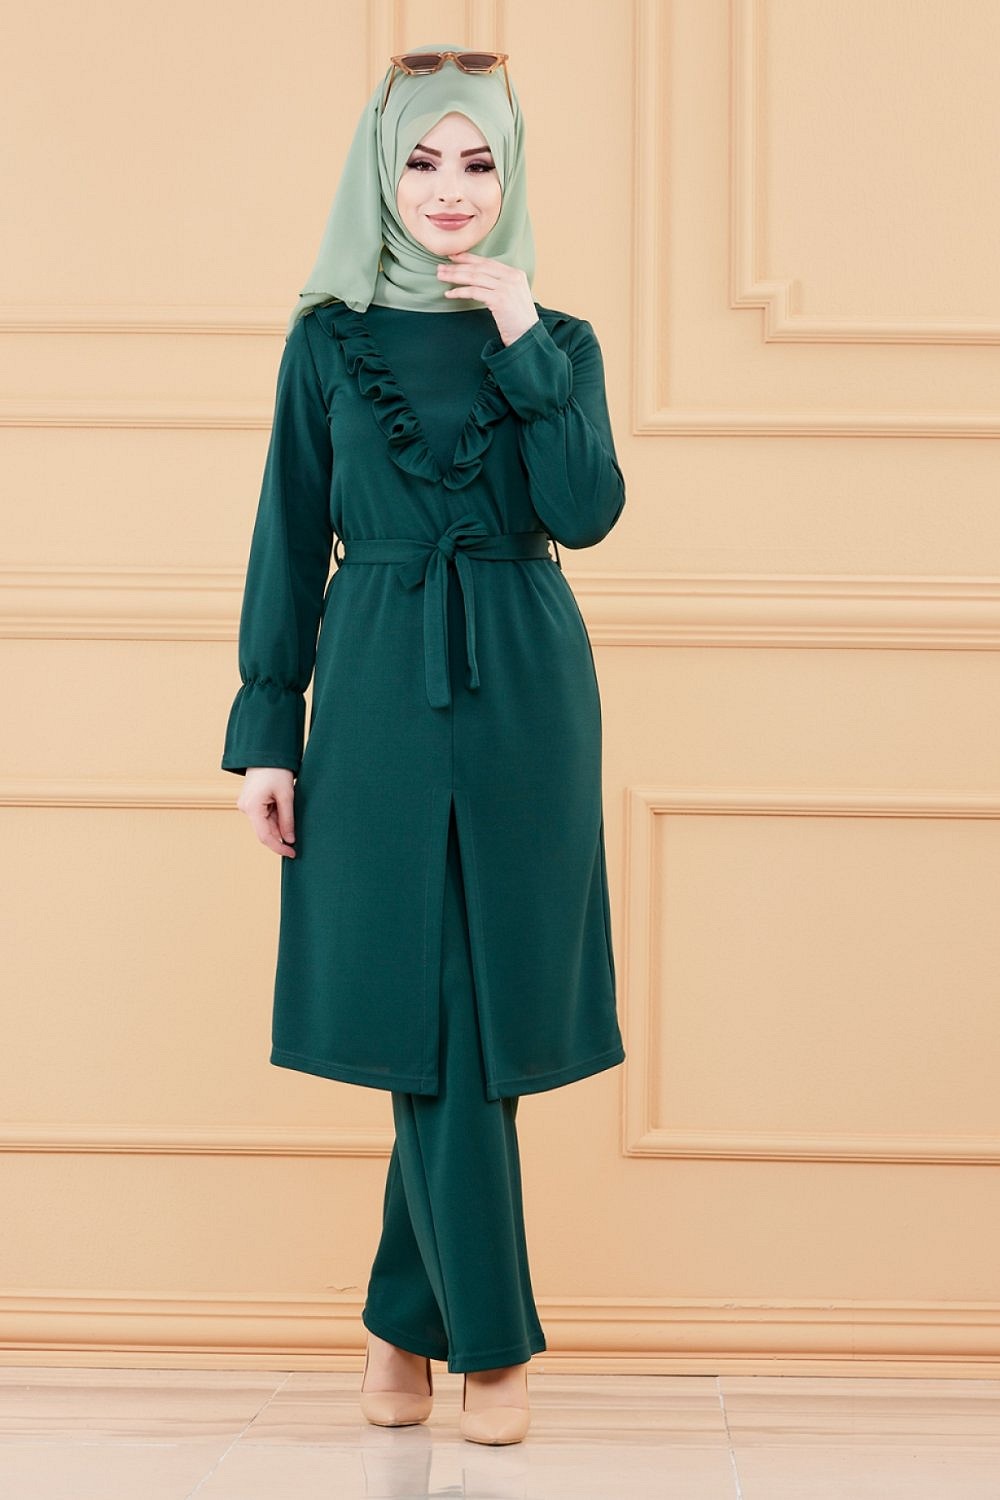 Ensemble classique deux pièces tunique et pantalon (Tenue hidjab pour femme  musulmane) - Couleur vert émeraude - Prêt à porter et accessoires sur